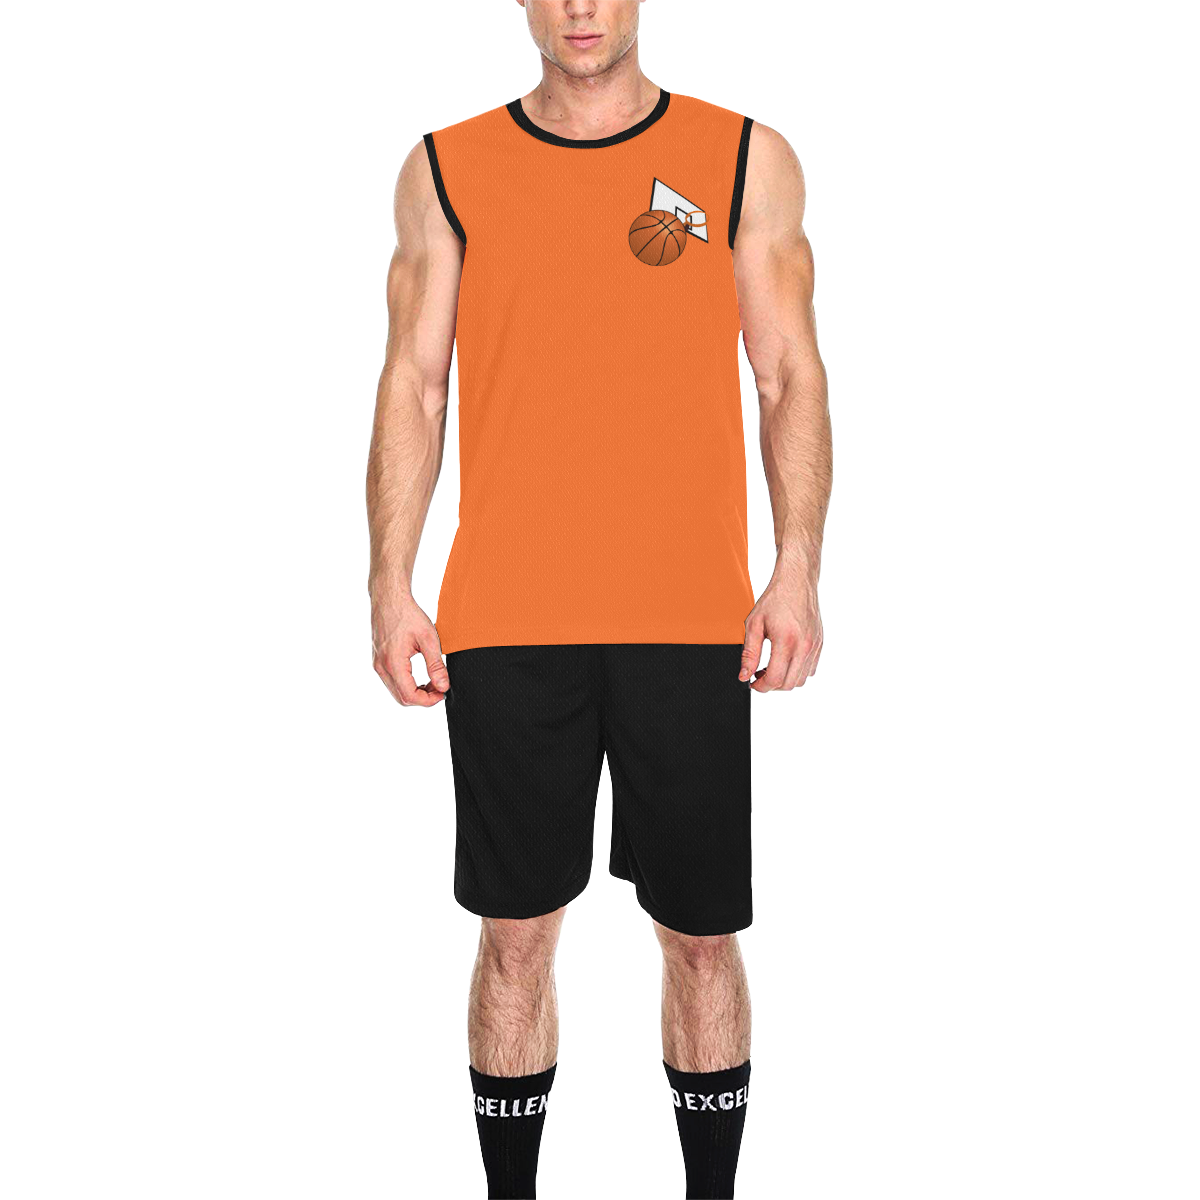 Basketball And Basketball Hoop Black and Orange All Over Print Basketball Uniform